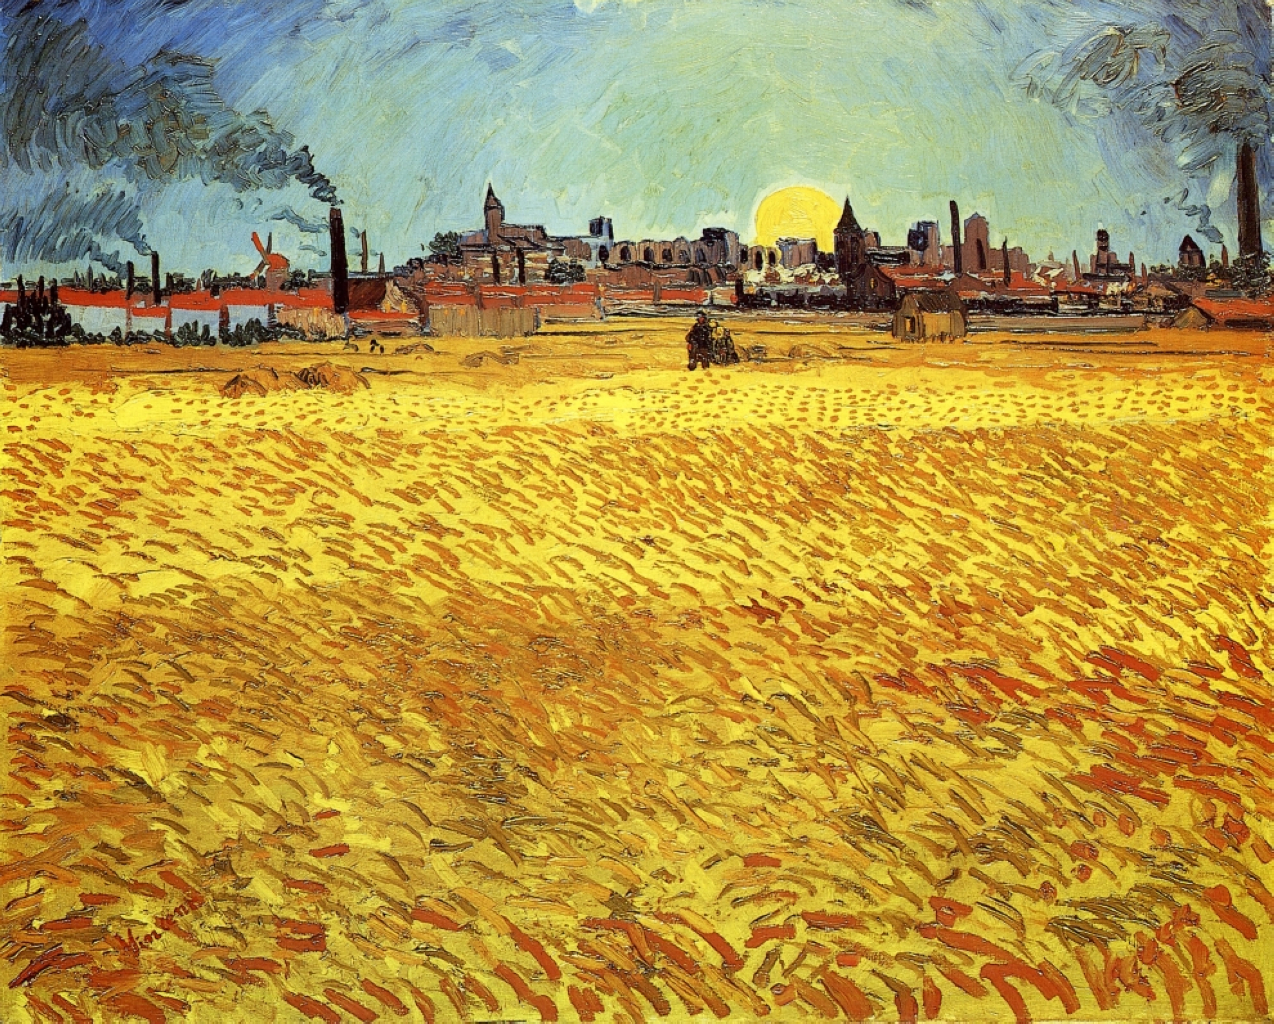 Soirée d été Champ de blé avec réglage ensoleillé by Vincent van Gogh - 1888 - 188 x 231 cm Musée des beaux-arts de Winterthour